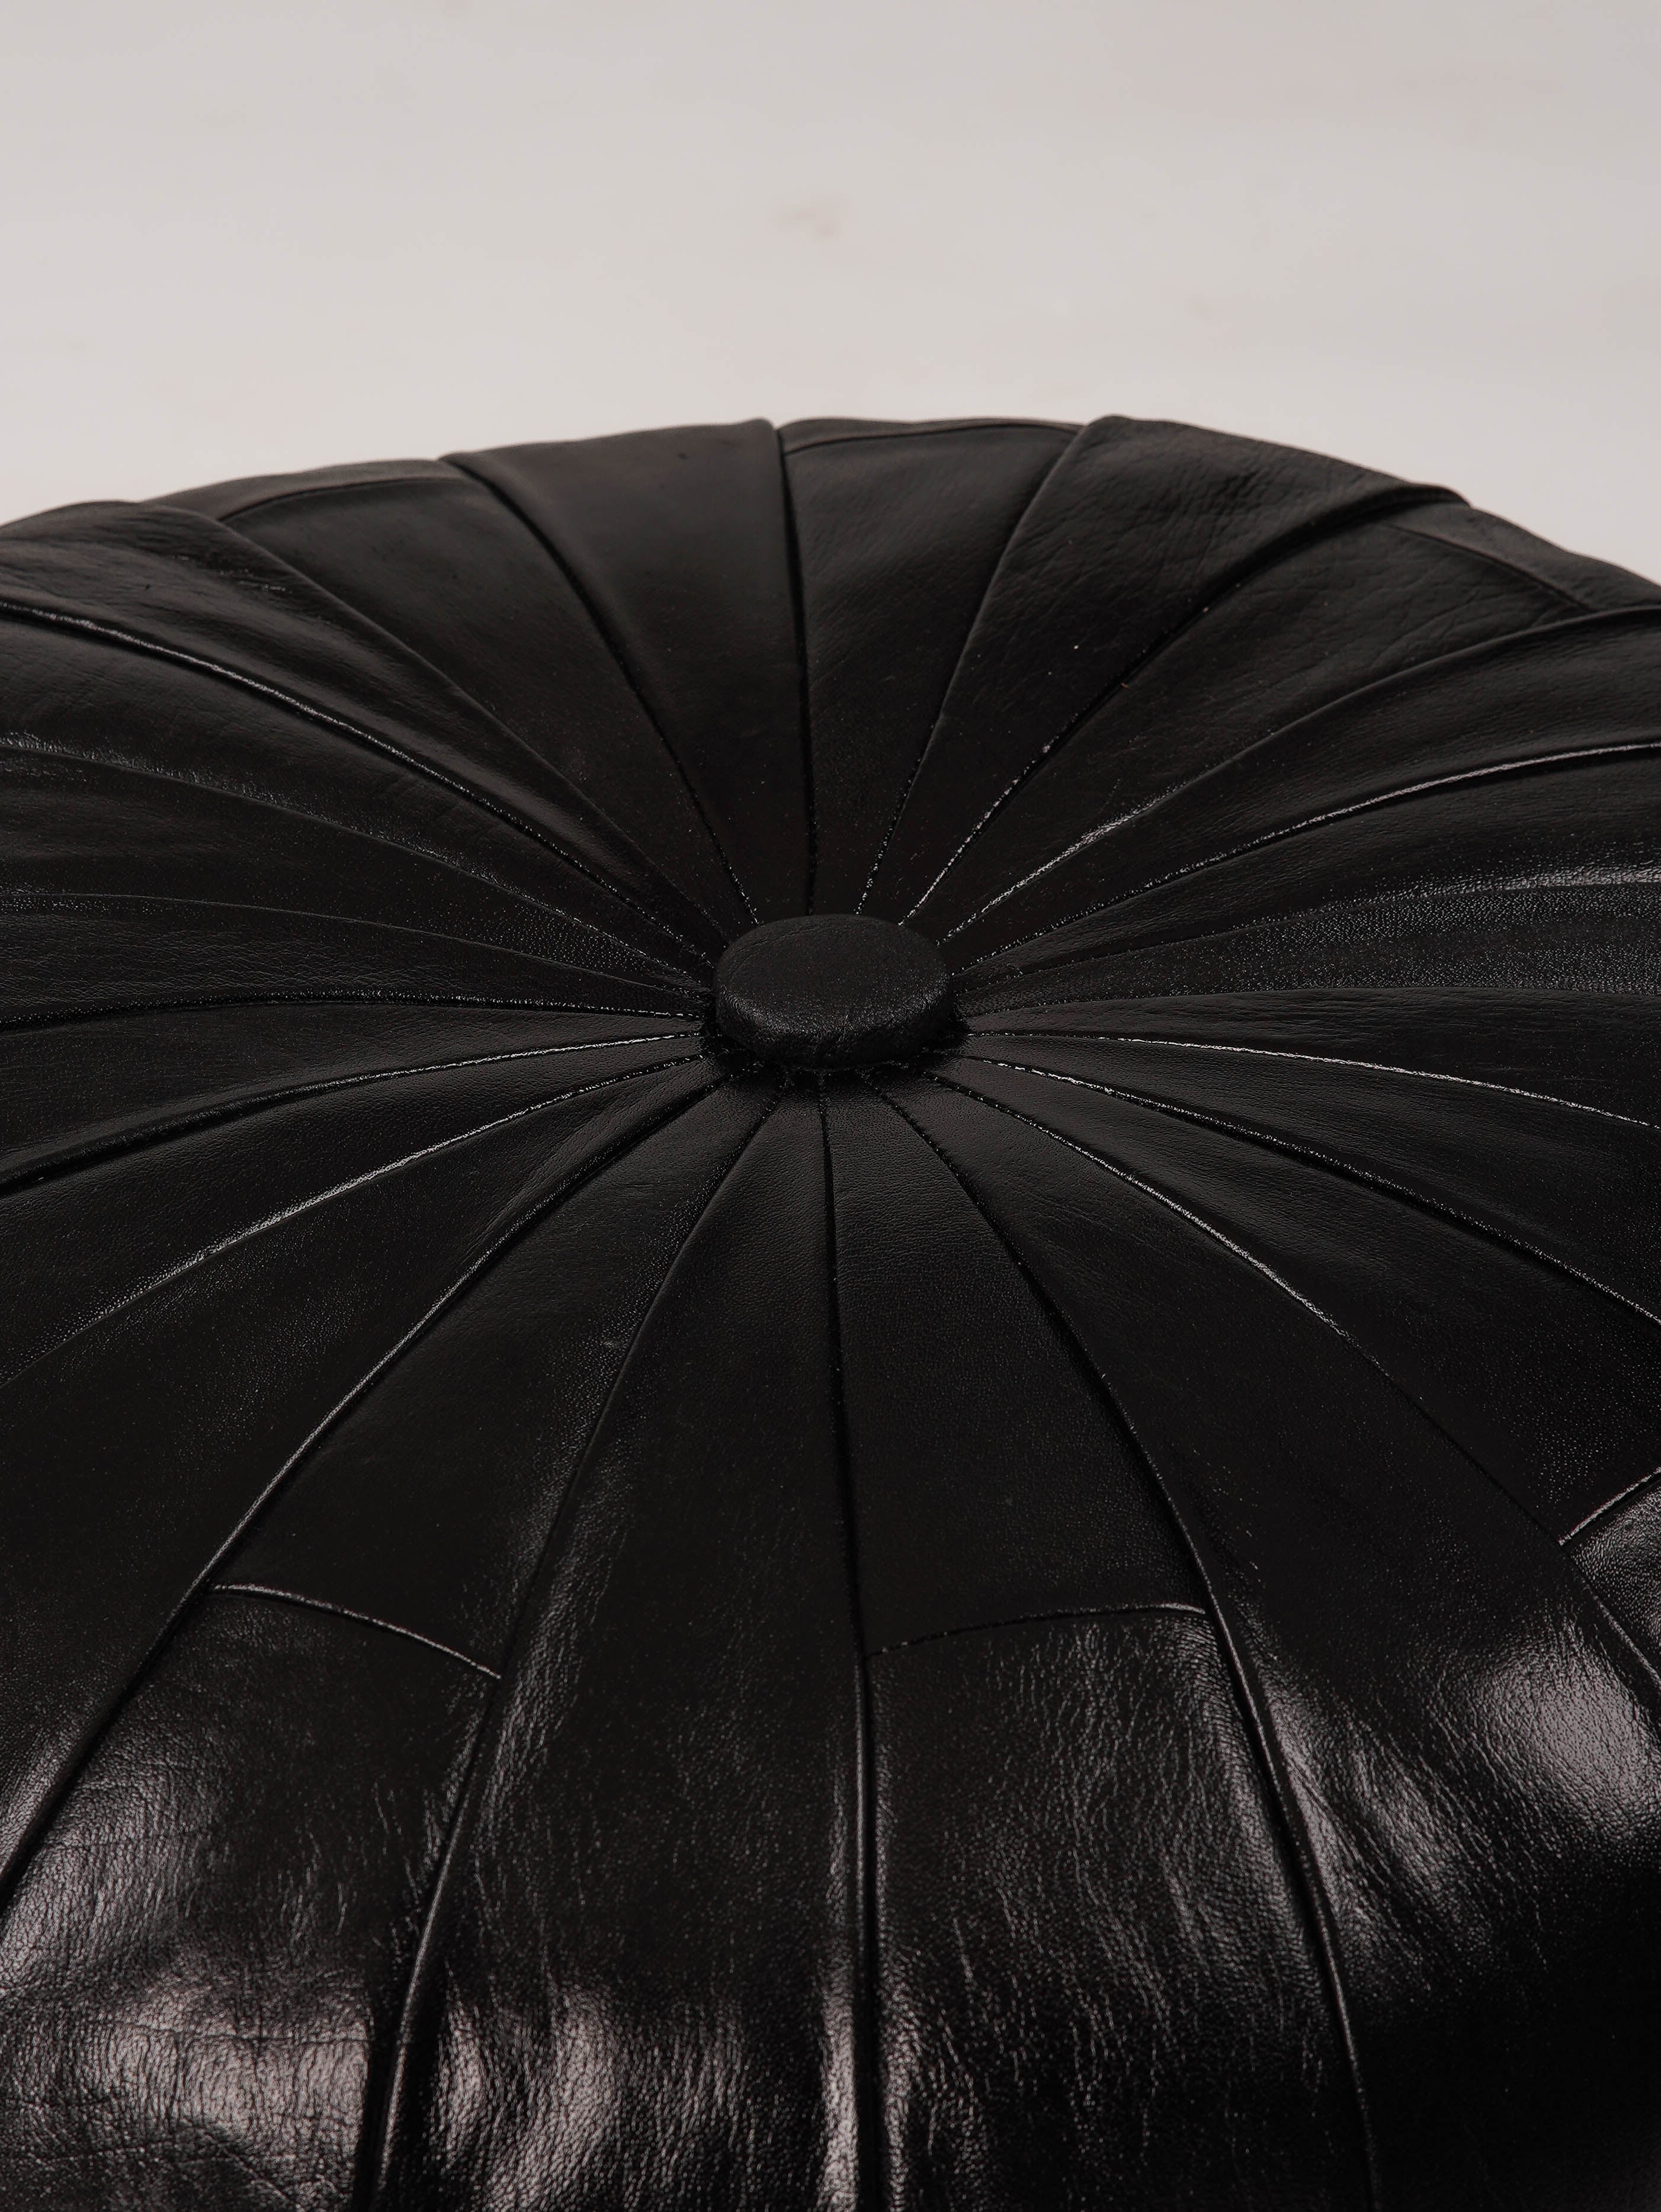 Noir Elegance Leather Pouf